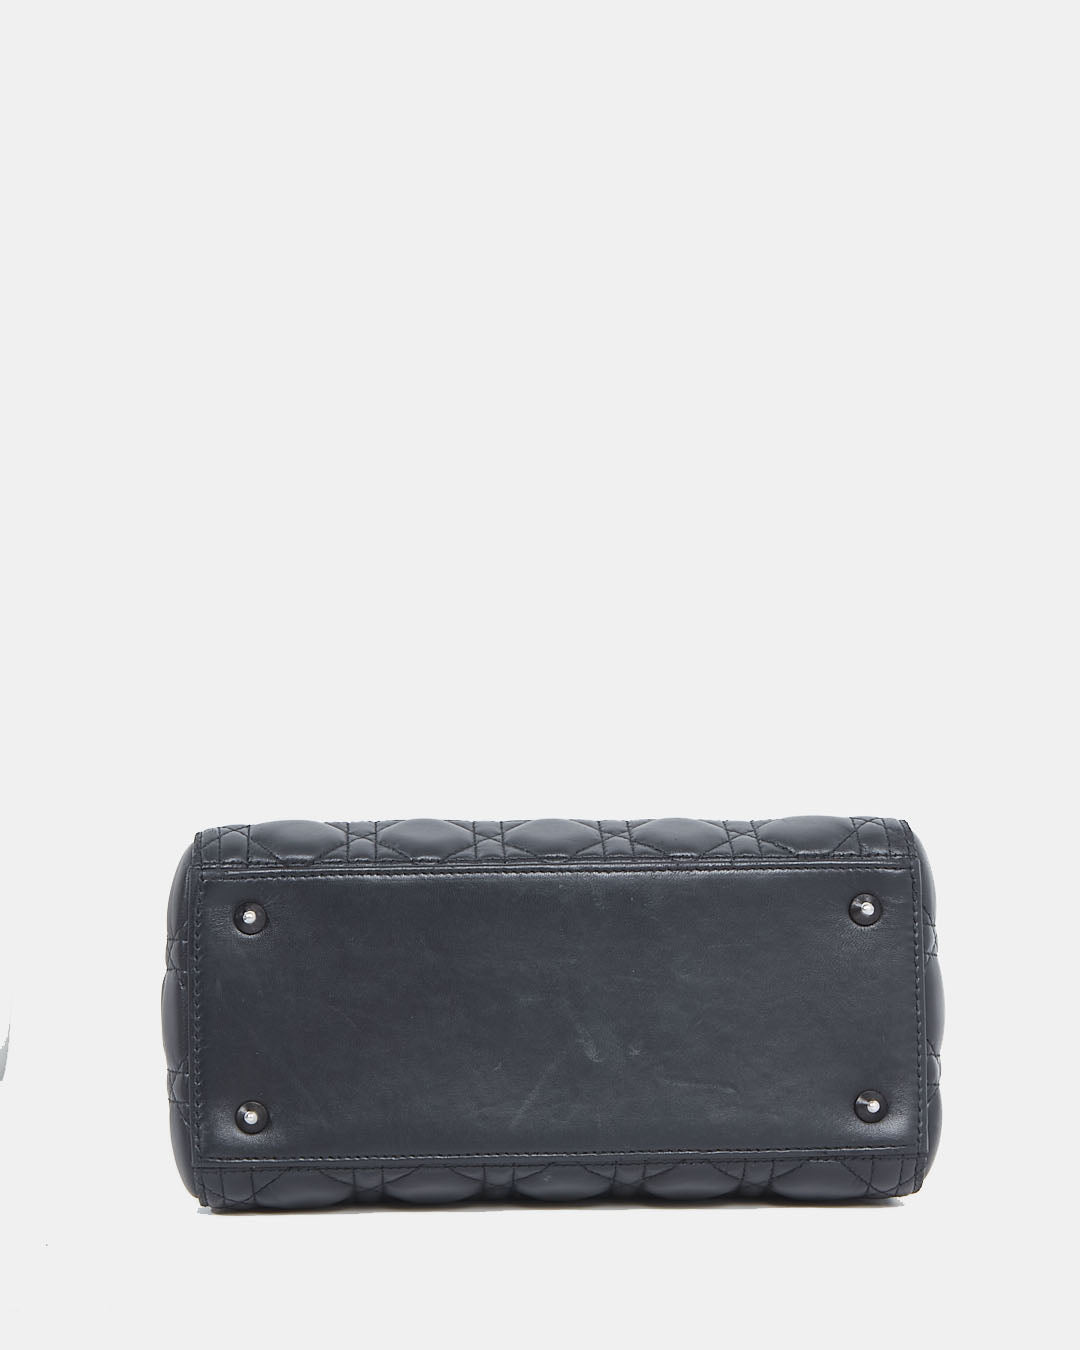 Dior Black Cannage Lambskin Leather Medium Lady Dior Bag w/ Gun Metal HWD